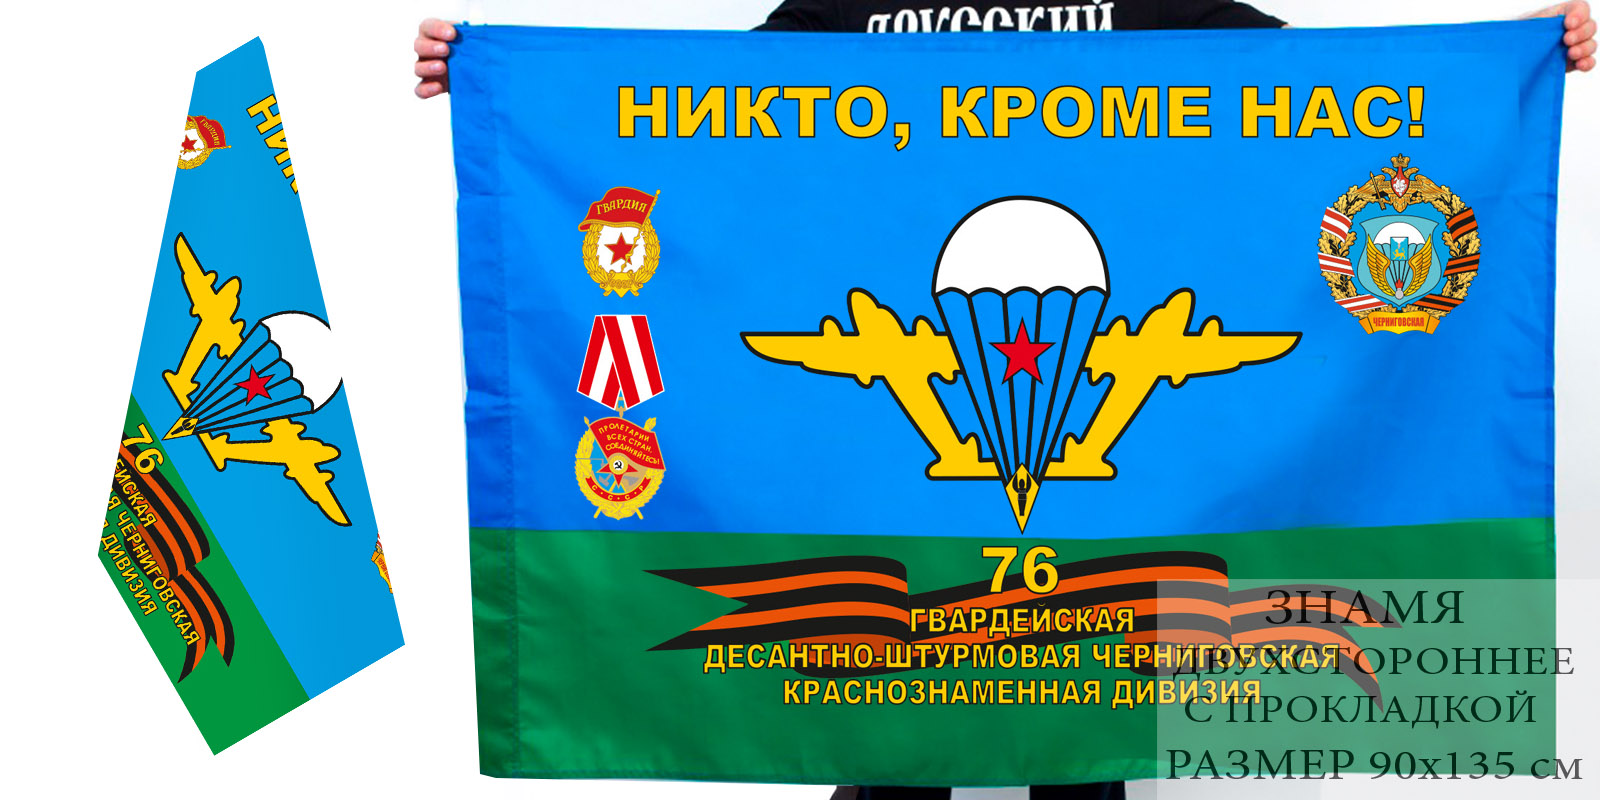 Двусторонний флаг 76 десантно-штурмовой дивизии ВДВ